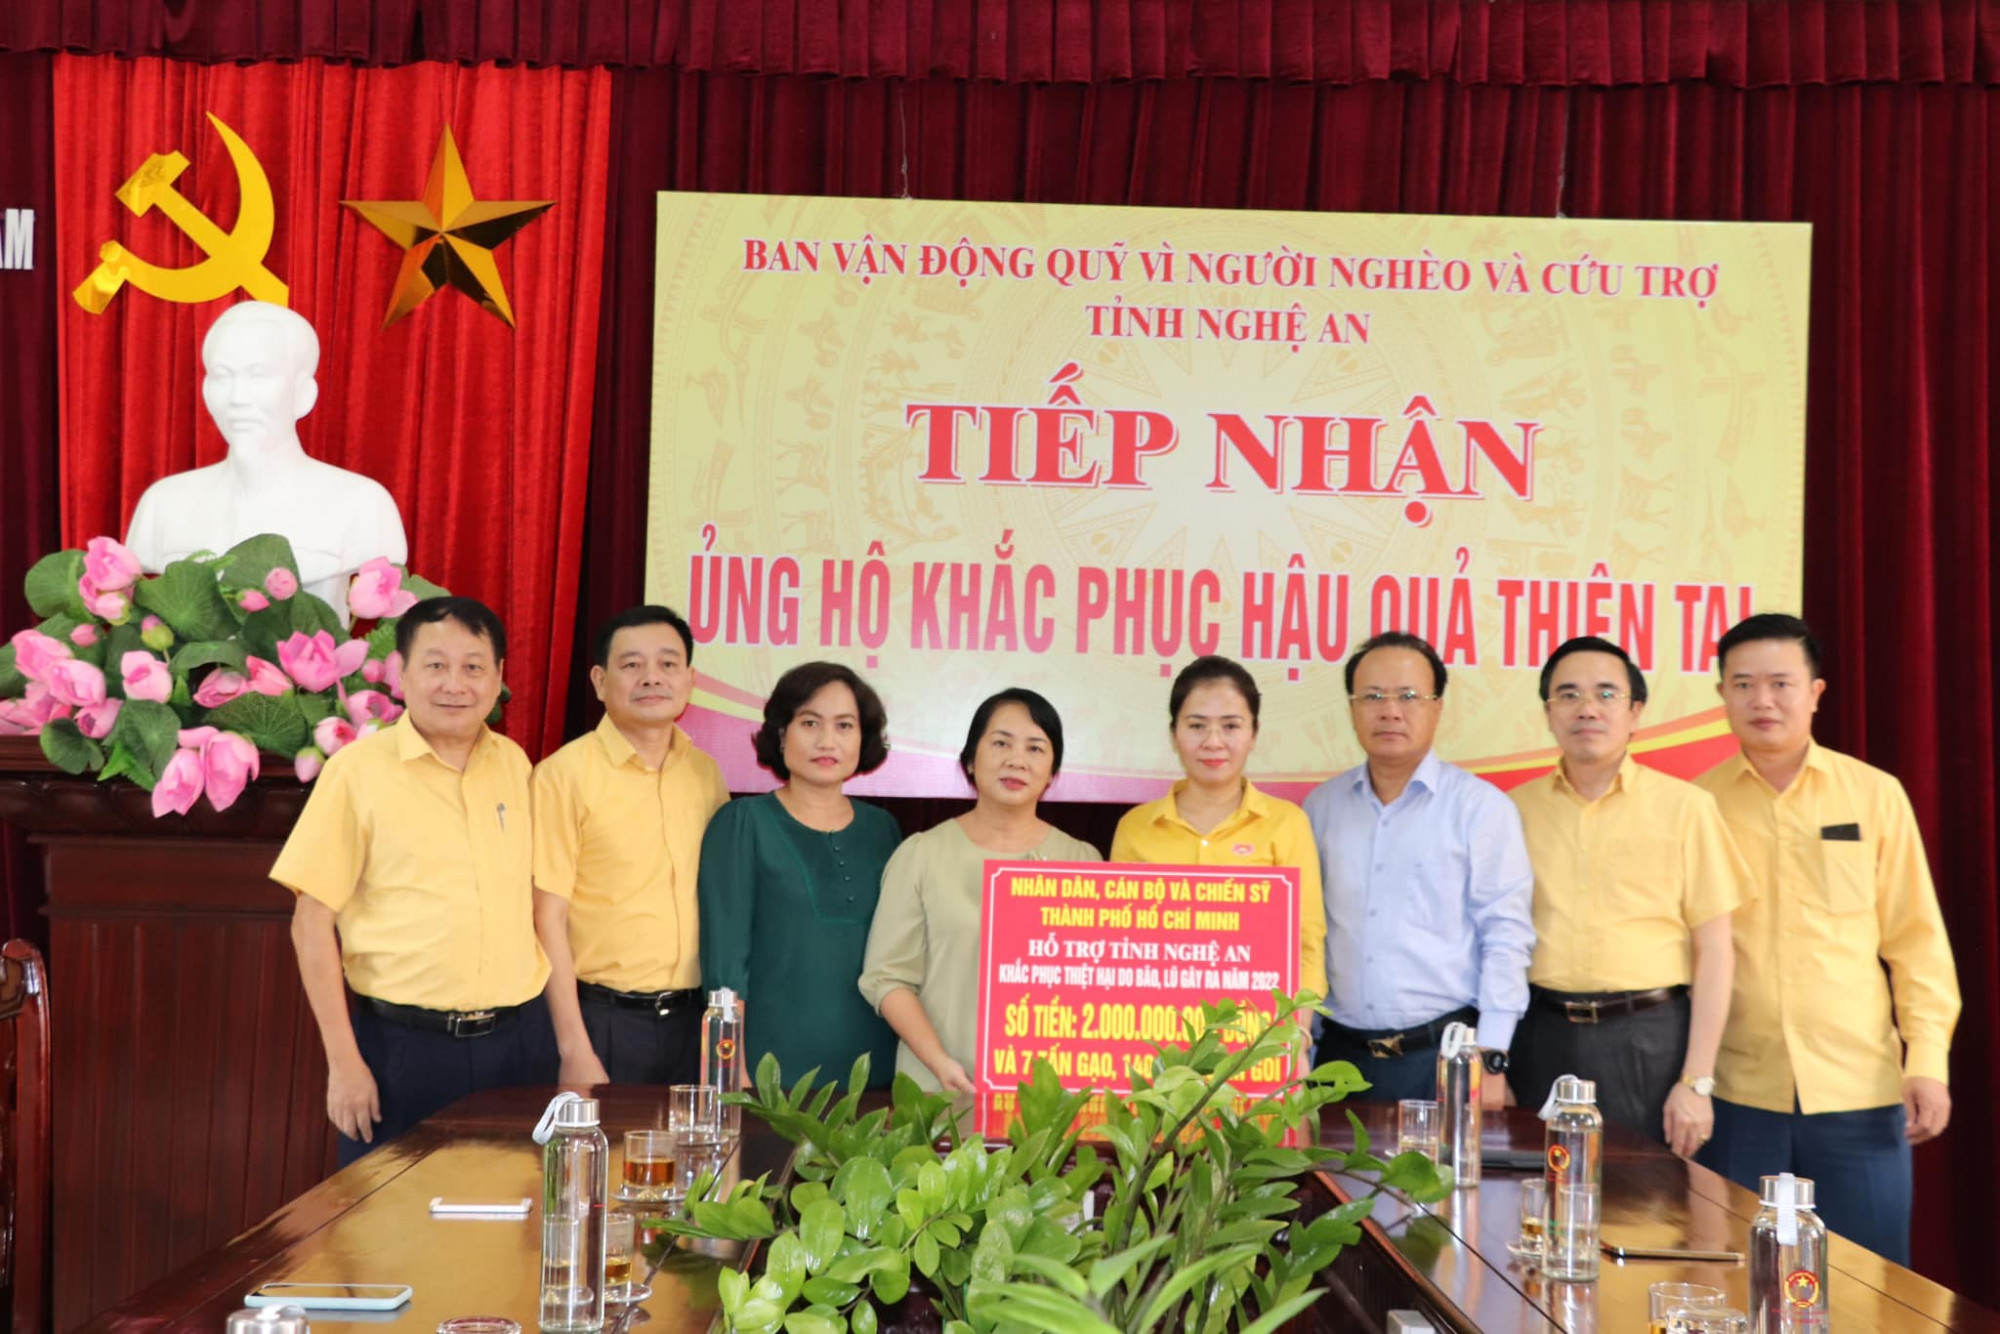 TP.Hồ Chí Minh trao tặng Nhân dân tỉnh Nghệ An 2 tỷ đồng, 7 tấn gạo, 140 thùng mì gói góp phần cùng tỉnh Nghệ An khắc phục thiệt hại sau bão, lũ.